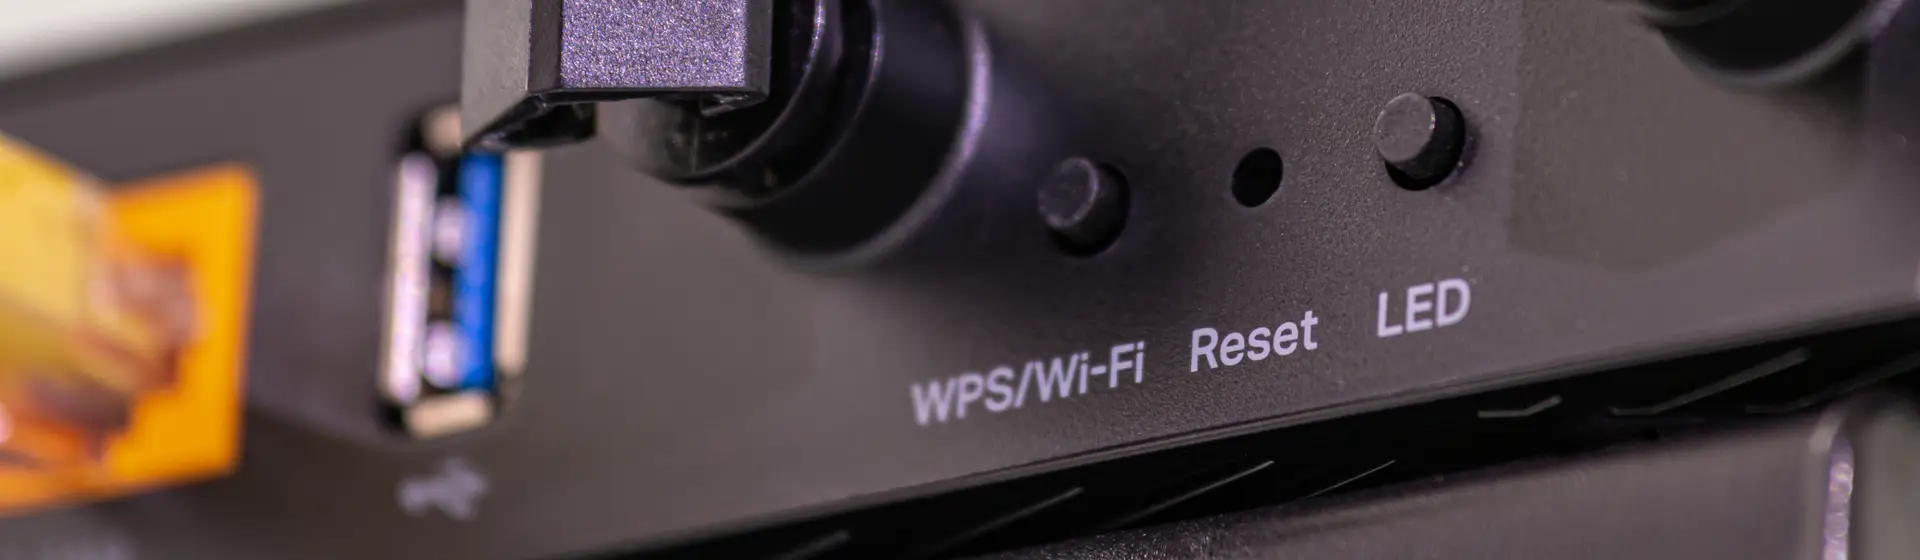 O que é WPS e qual a vantagem de ter esse botão em um roteador?